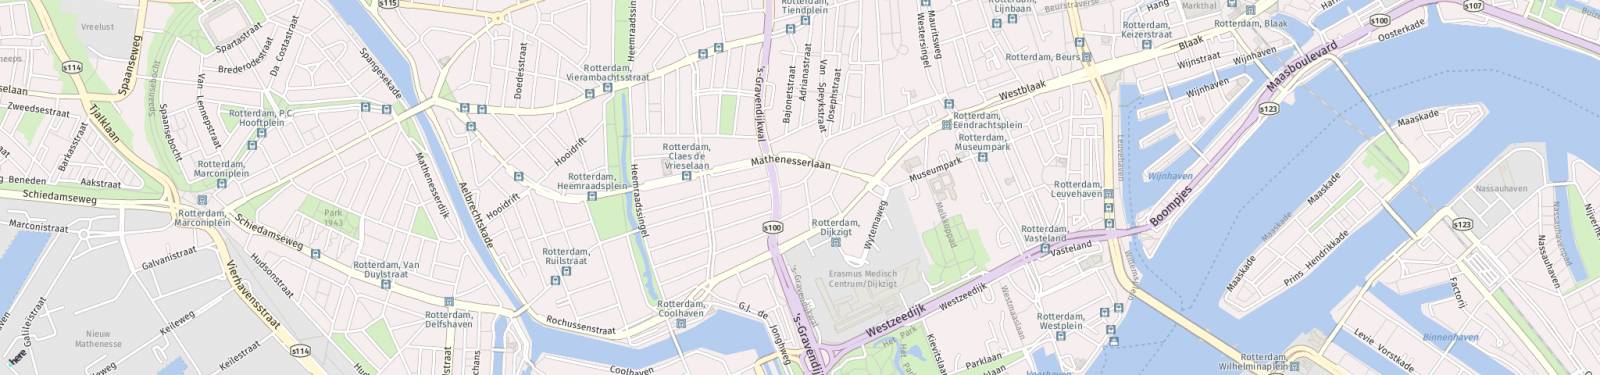 Kaart met locatie Appartement Nieuwe Binnenweg